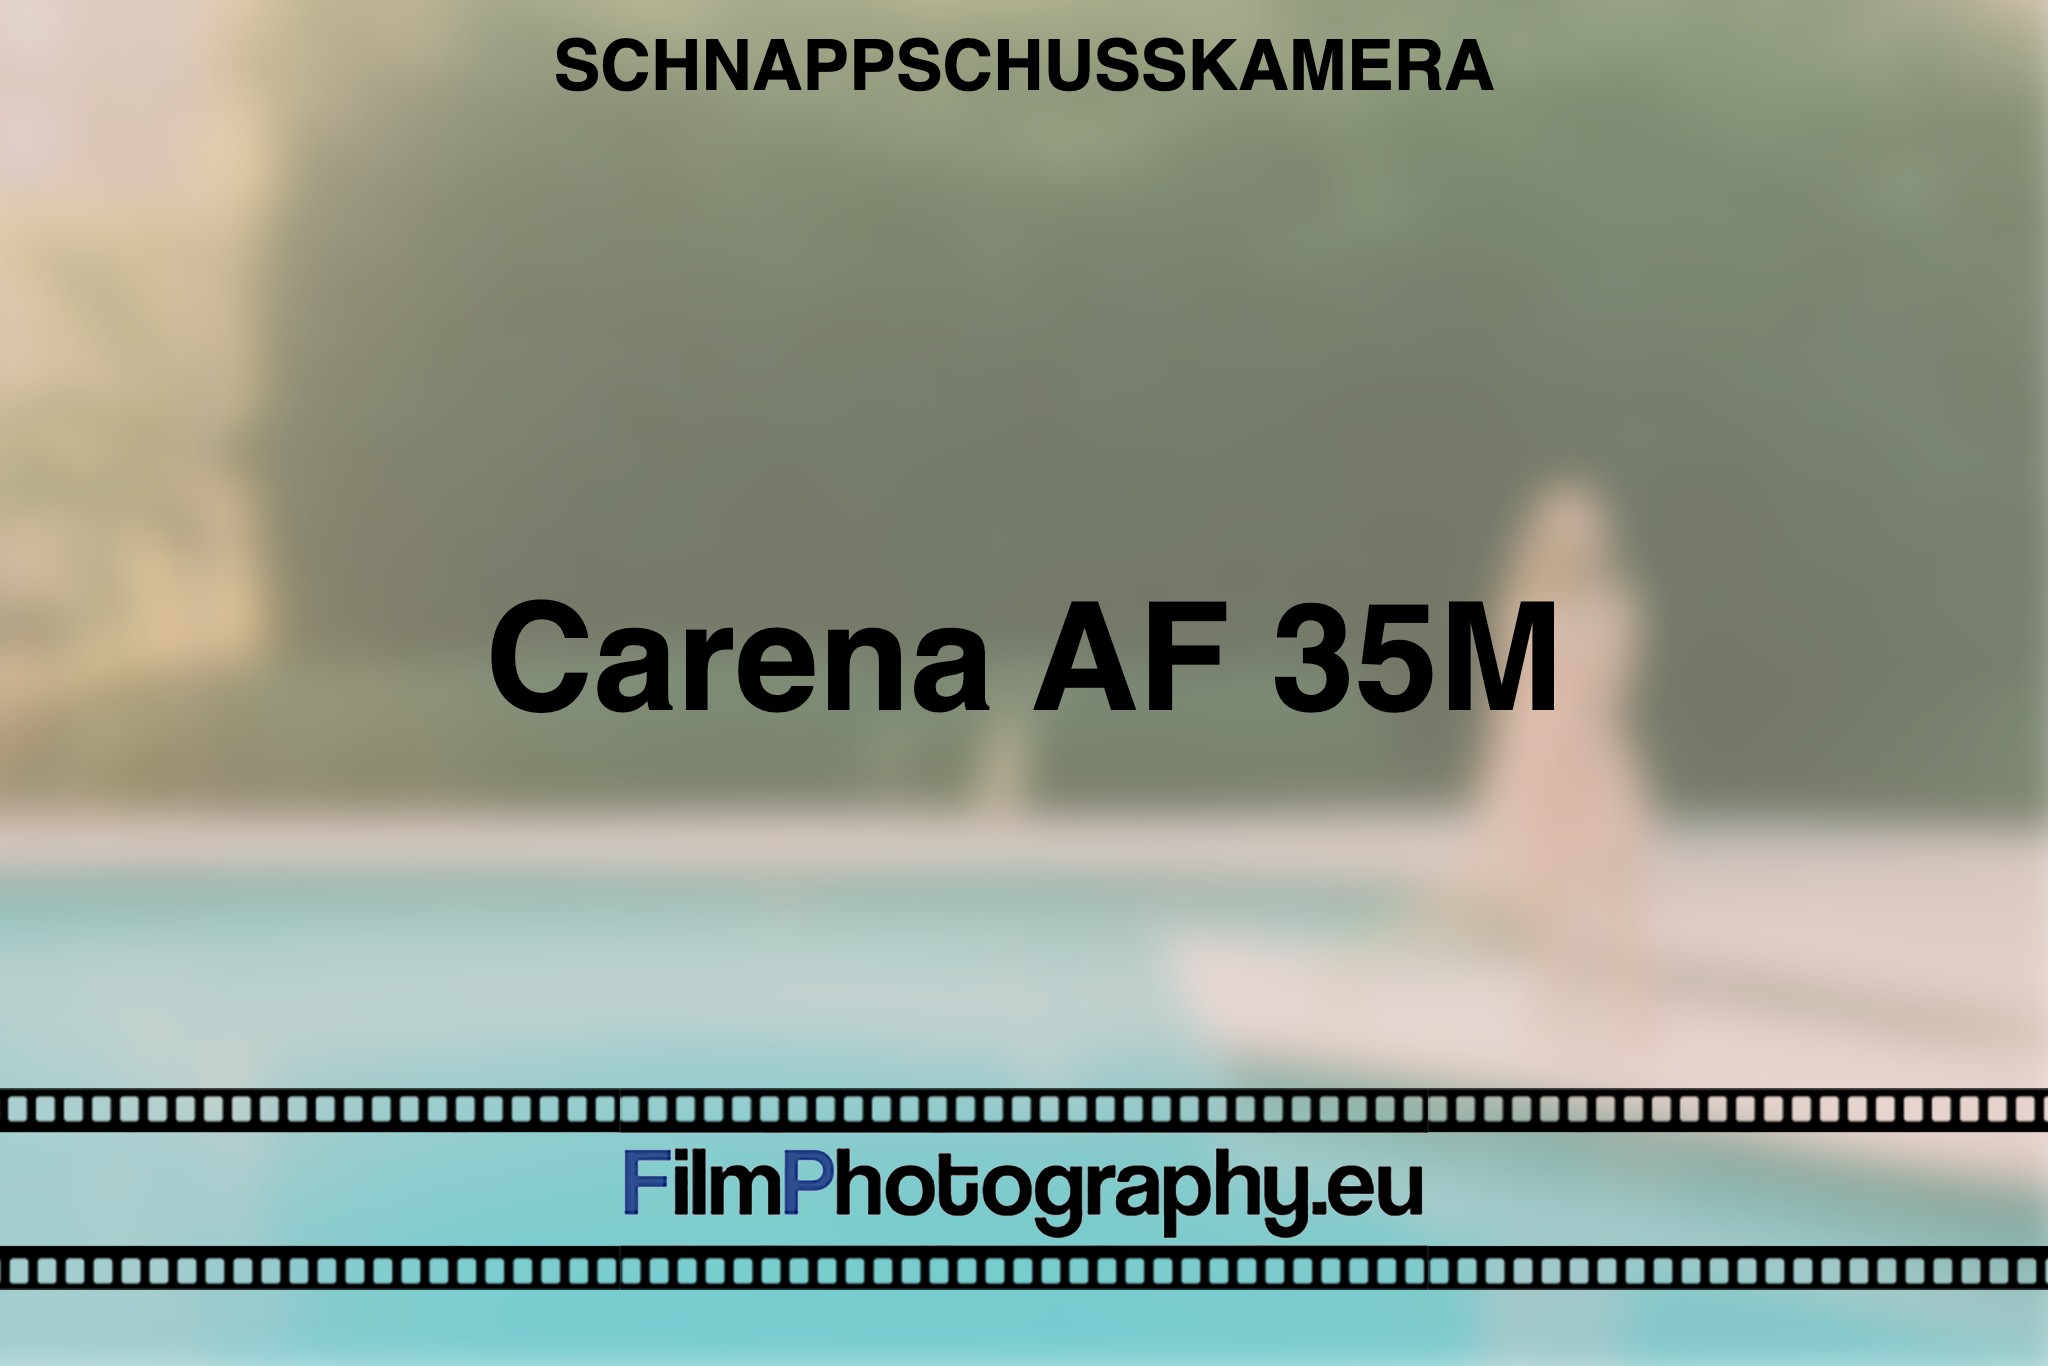 carena-af-35m-schnappschusskamera-bnv